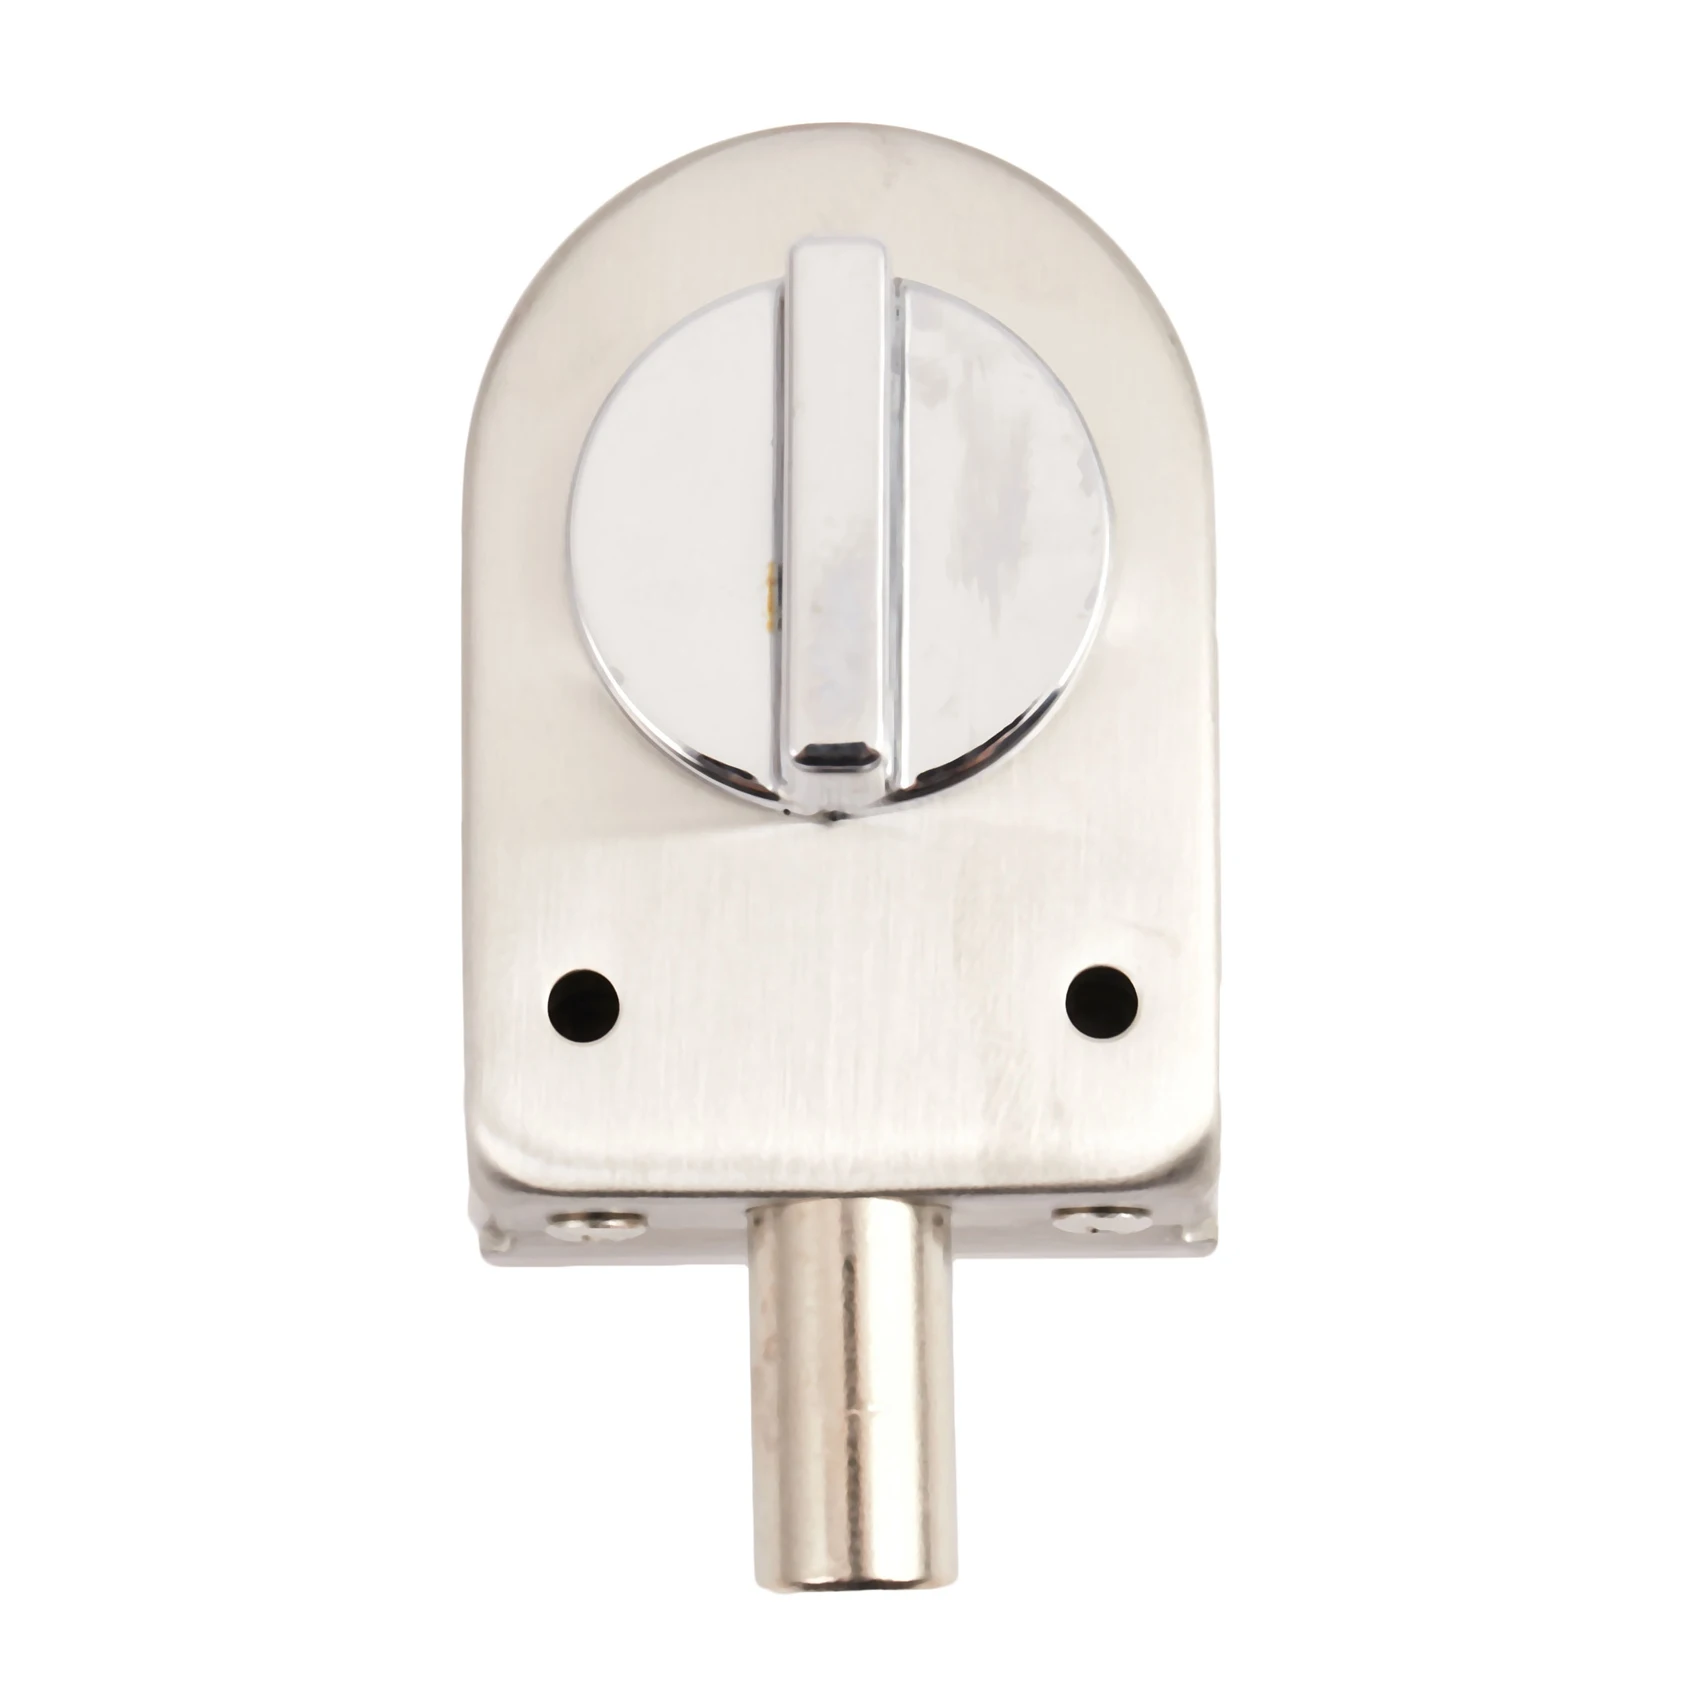 

Glass Sliding Door Latch Lock Non-Apertured Stainless Steel Glass Door Lock for Shower Room Bathroom Accessories